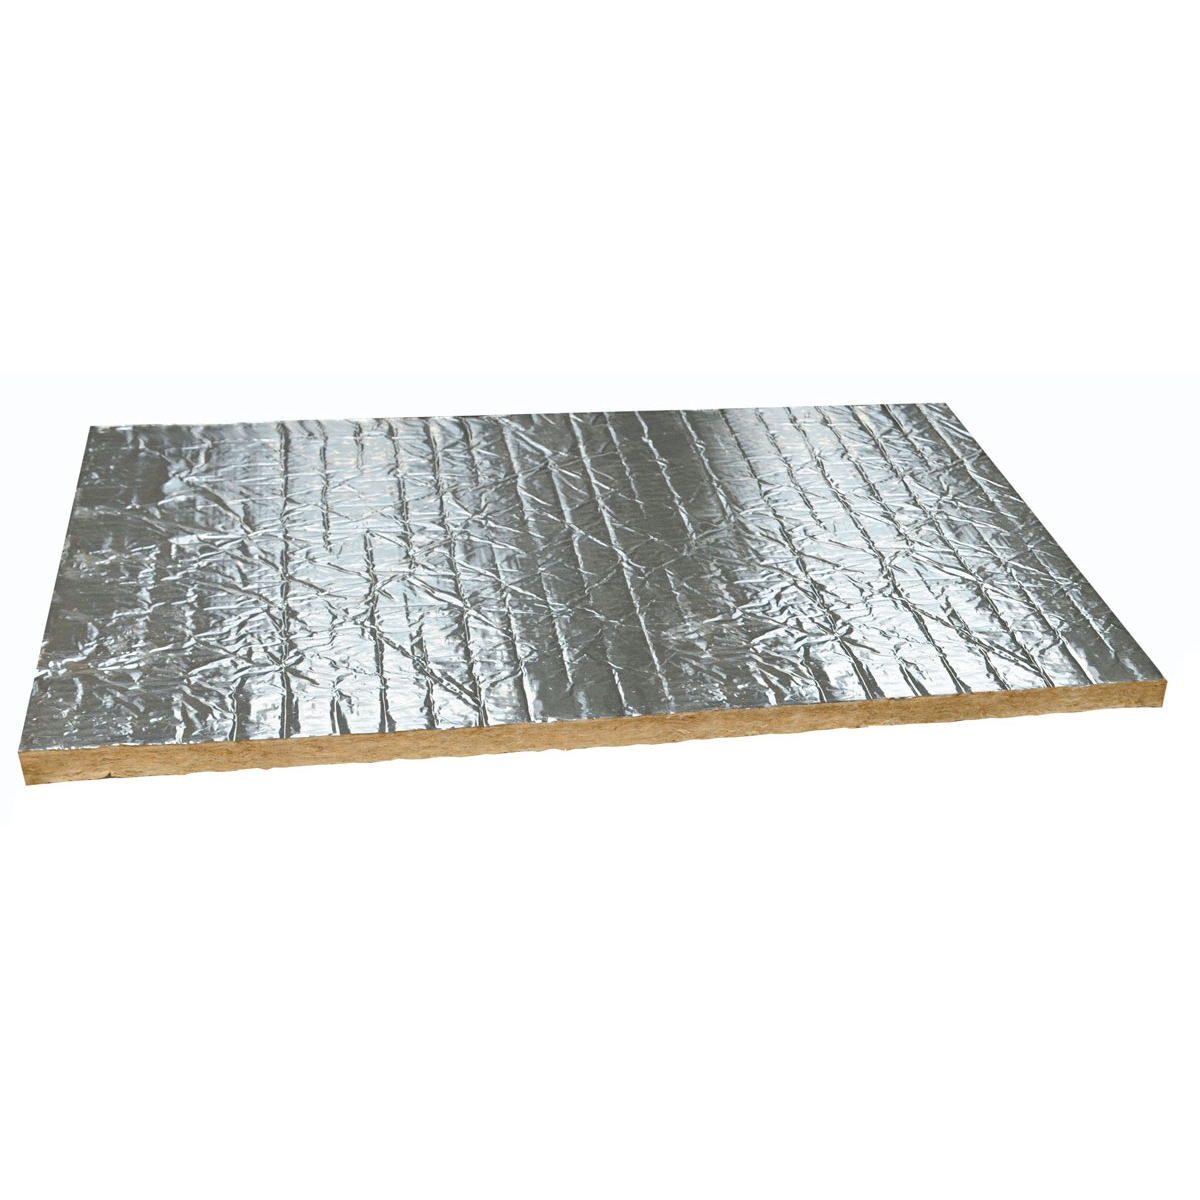 Aislamiento térmico Rockwool - Panel Firerock - Lana de roca revestida de aluminio (Pack 6 m2)